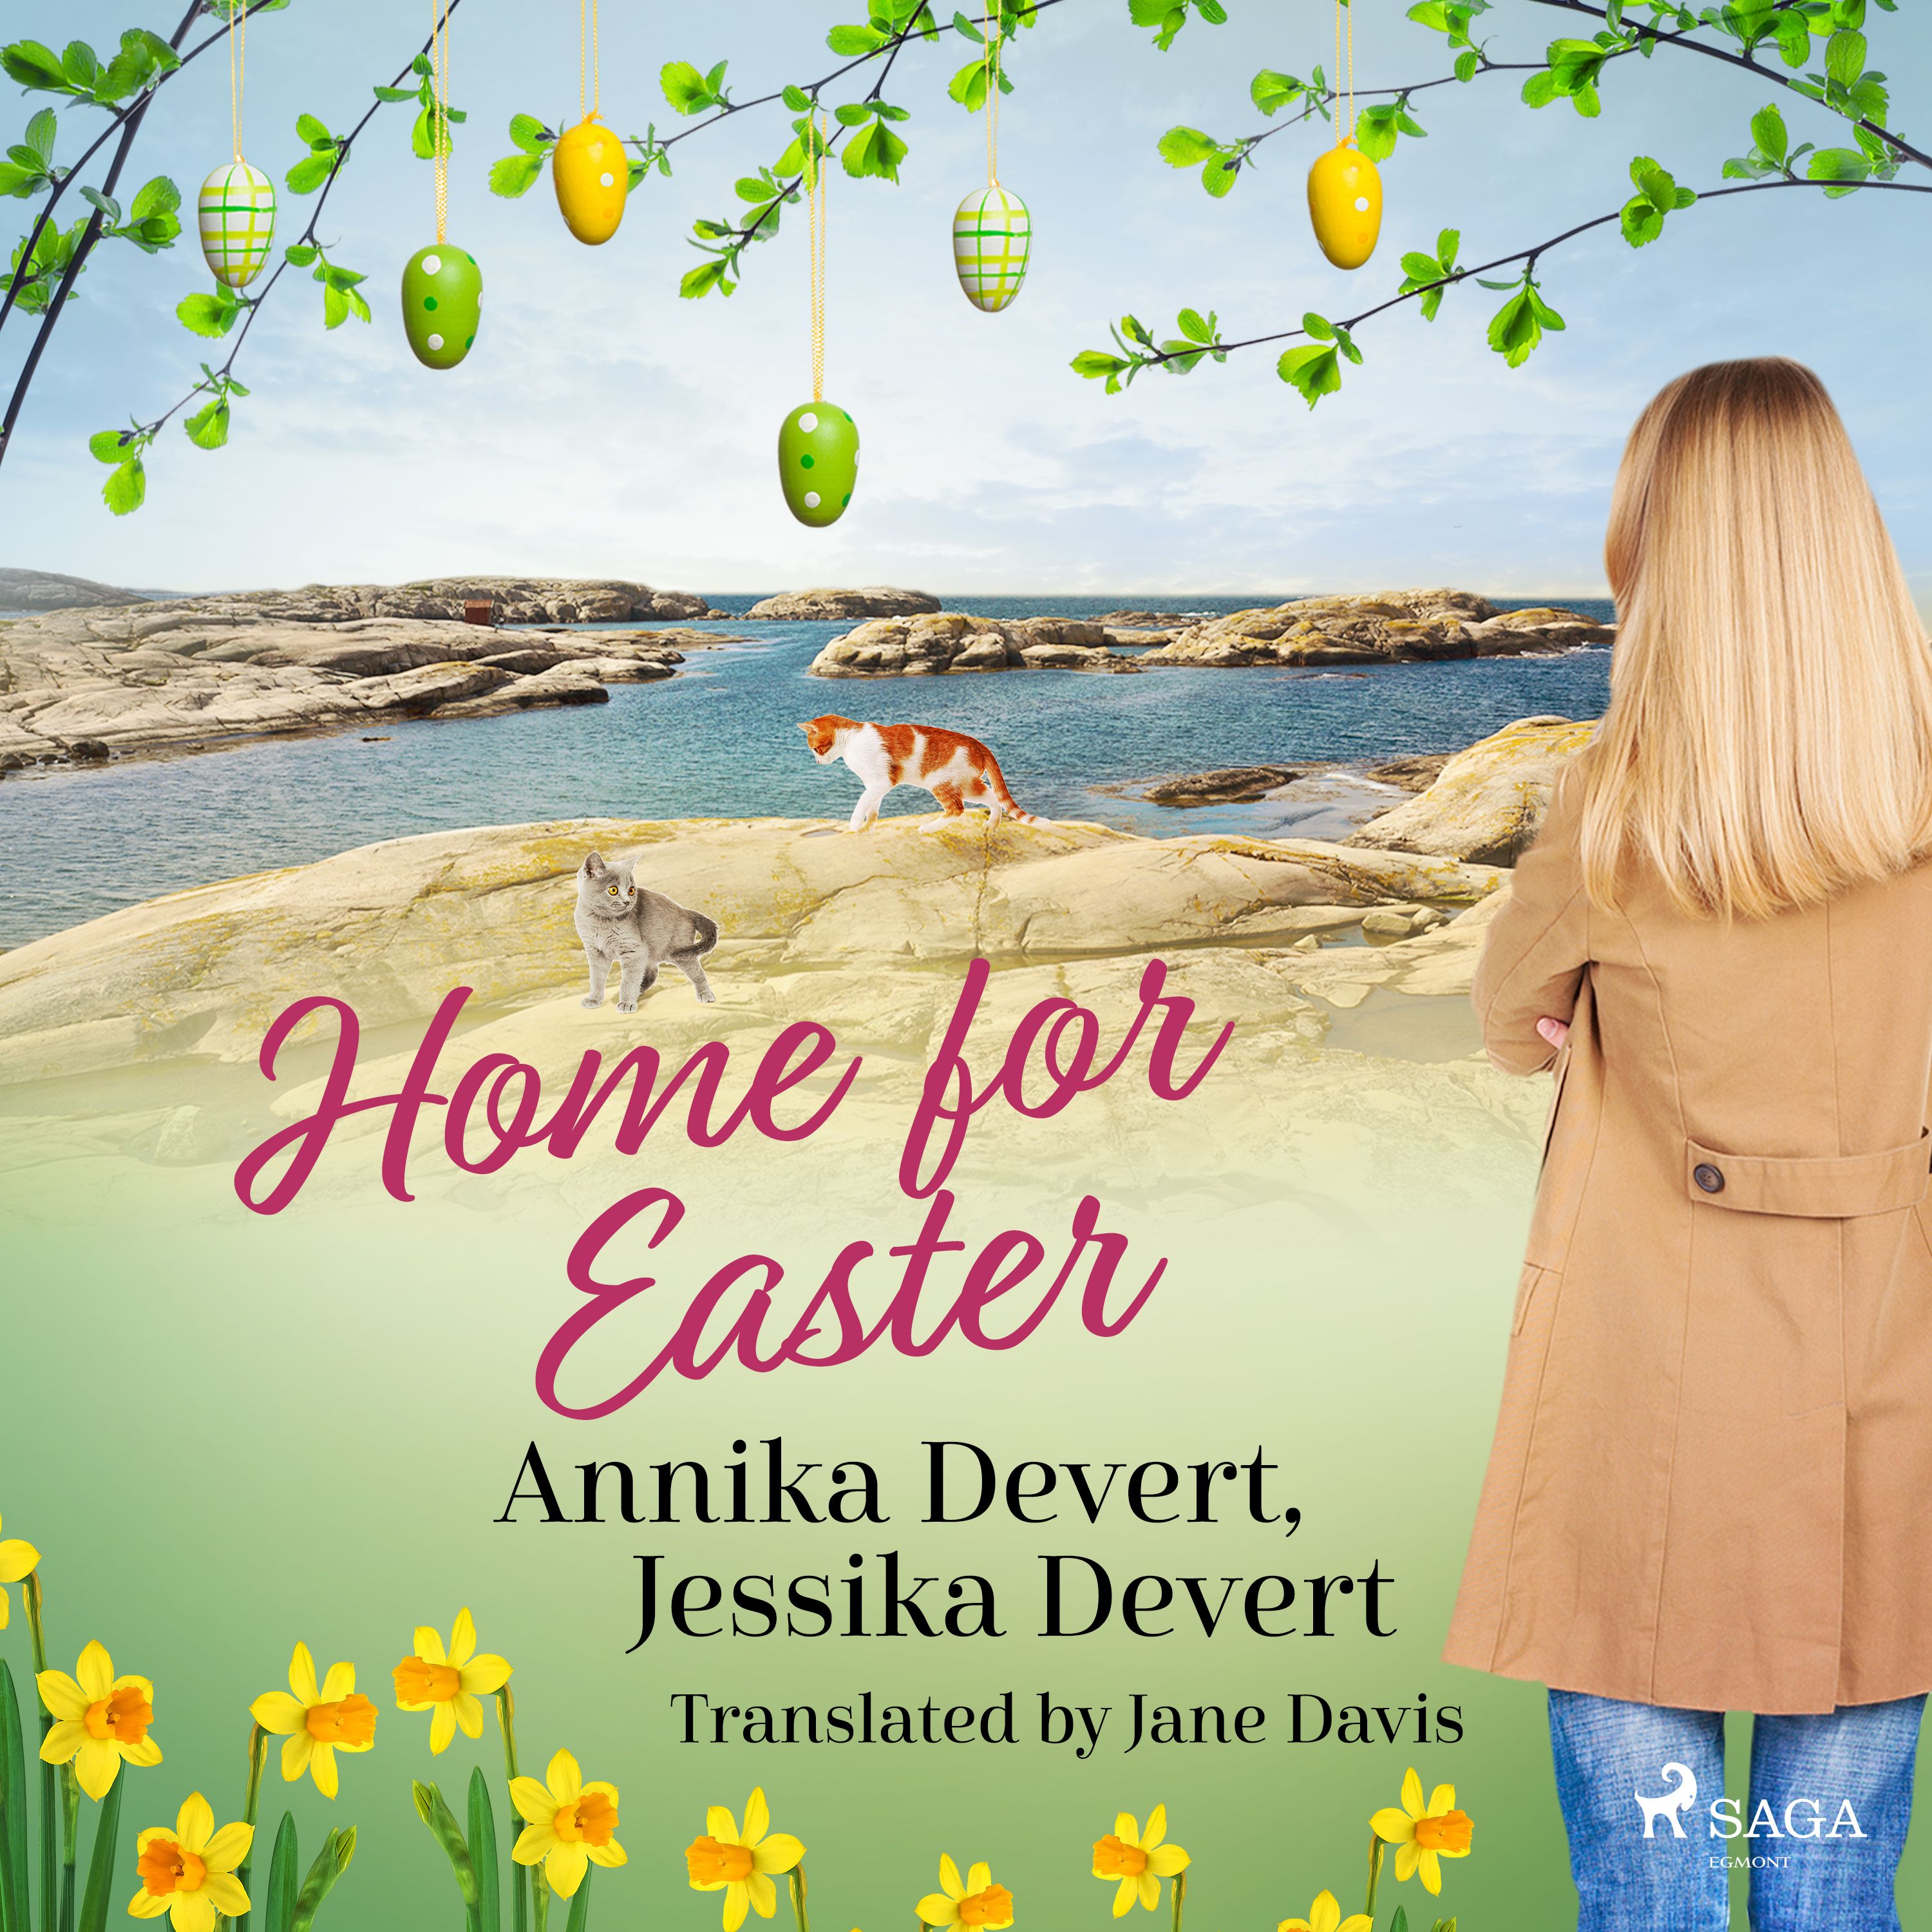 Home for Easter, ljudbok av Jessika Devert, Annika Devert